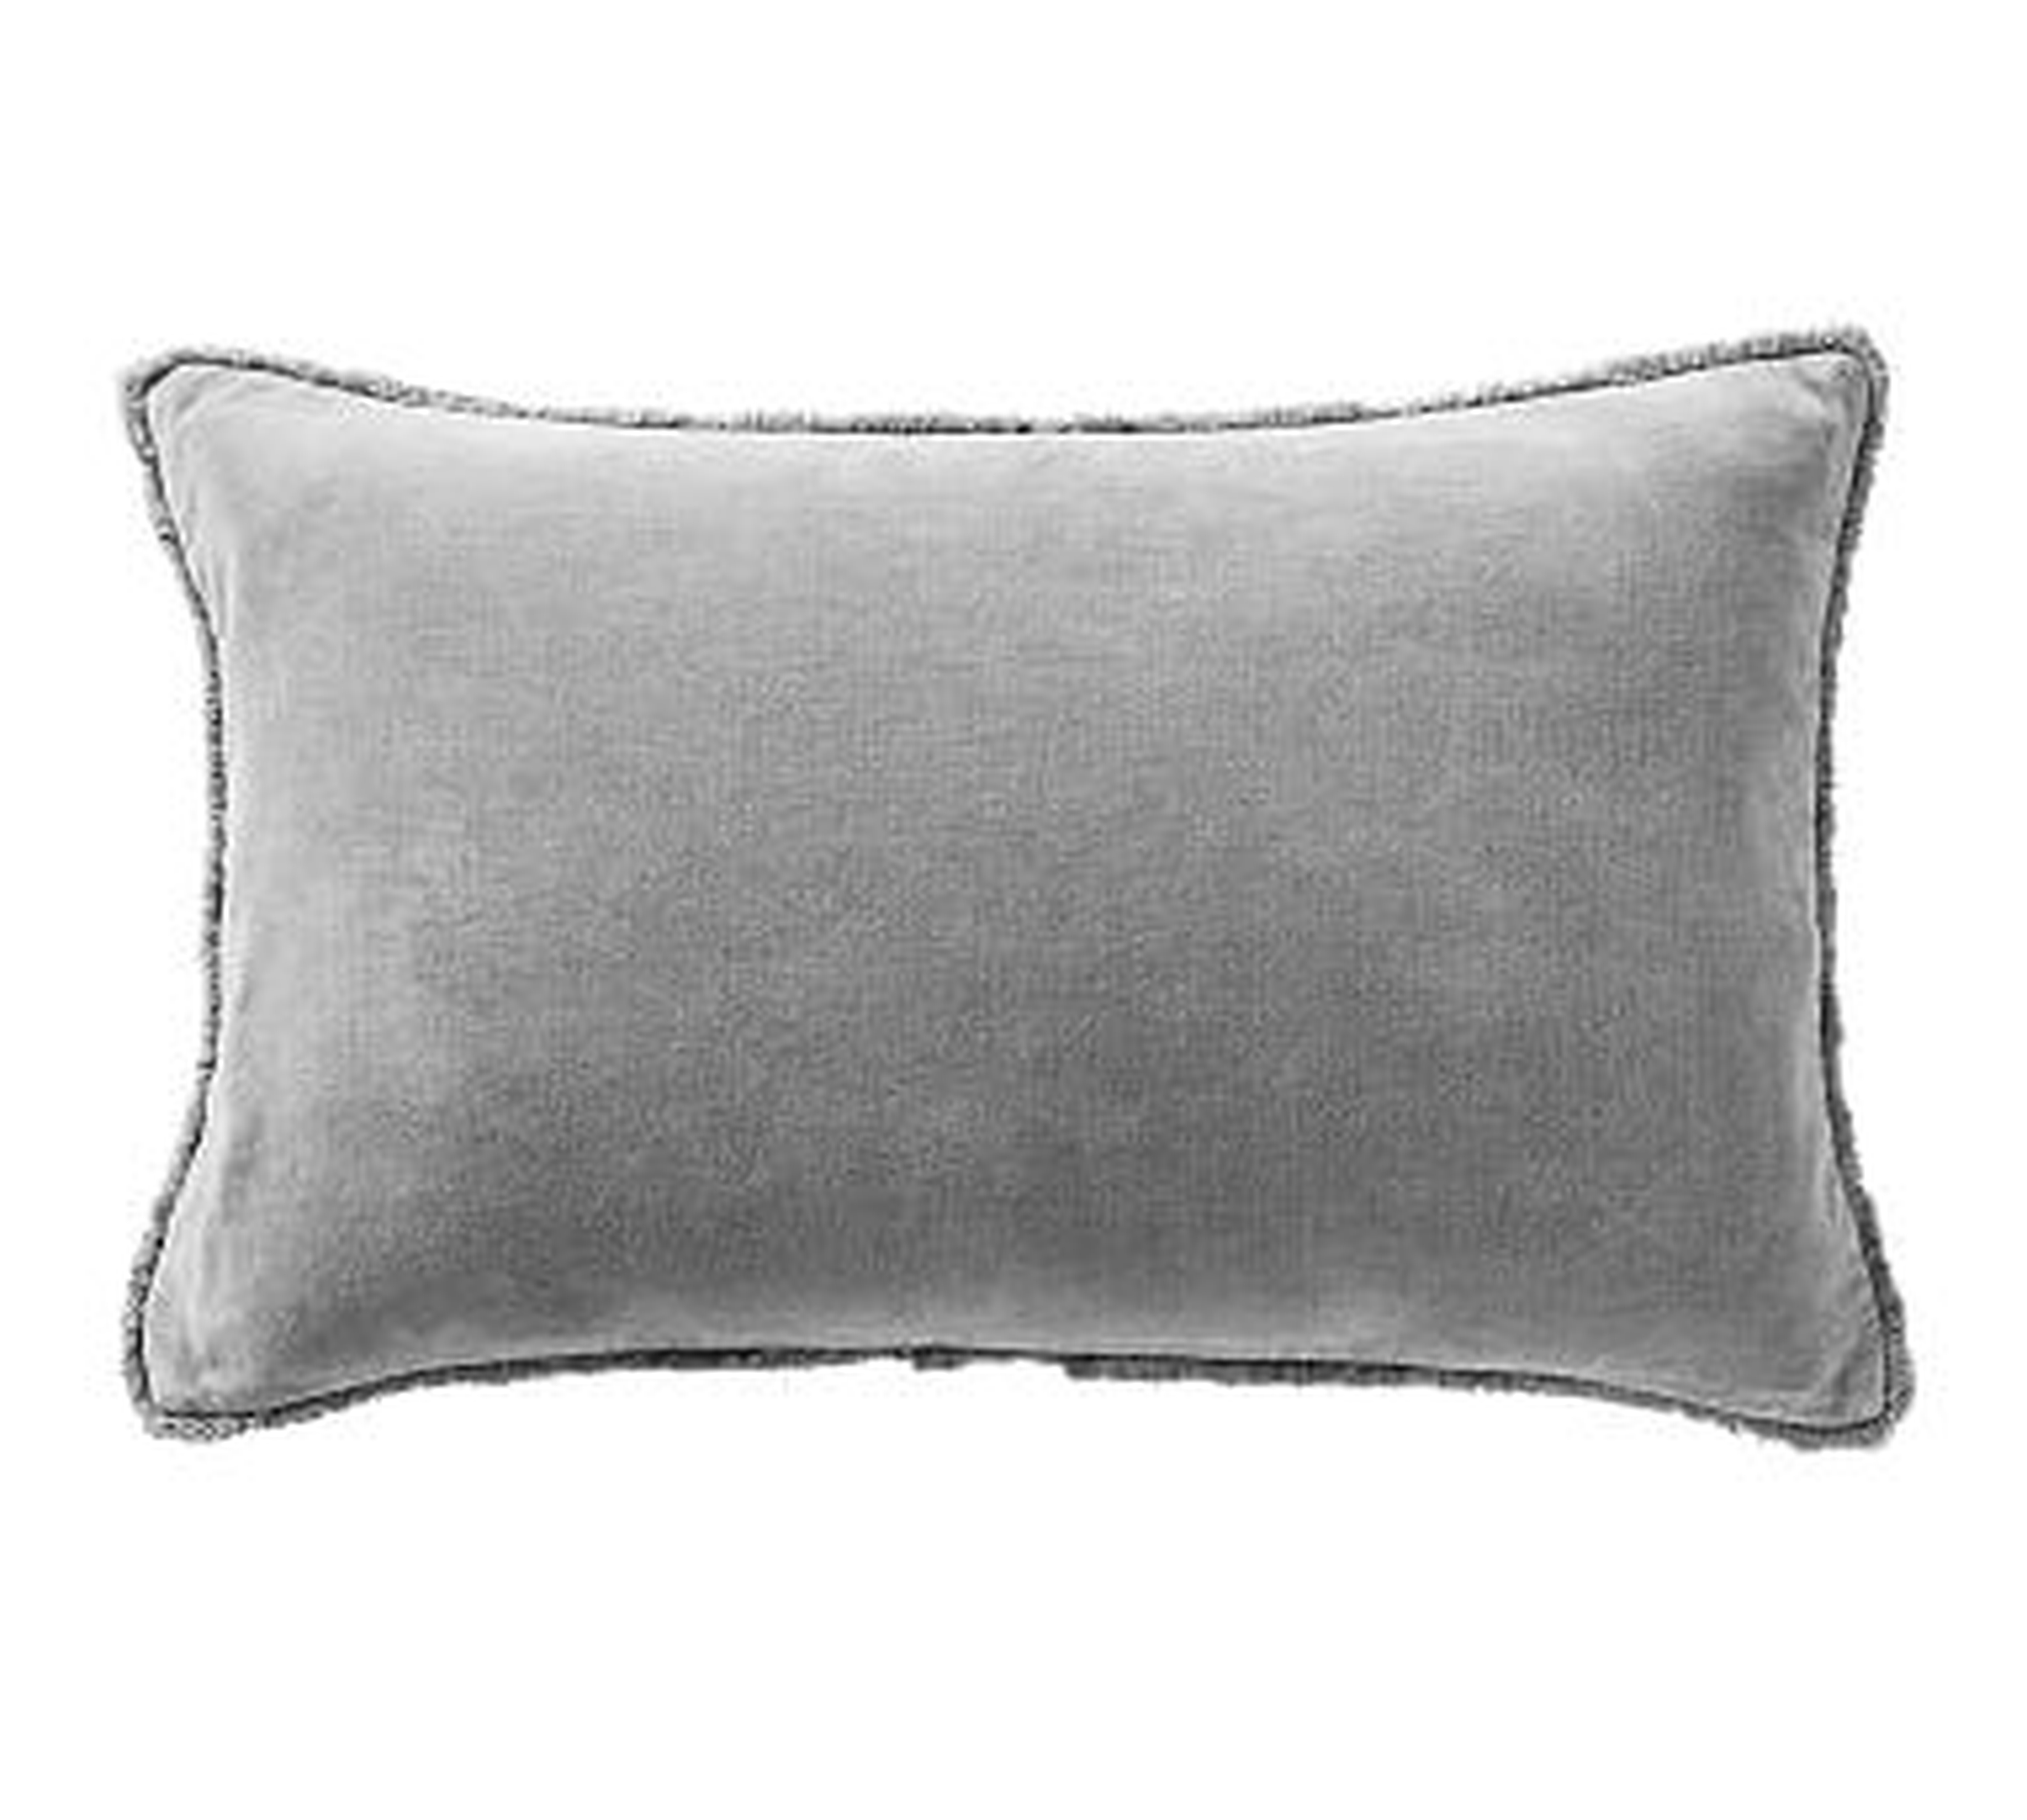 Fringe Velvet Lumbar Pillow Cover, 16 x 26", Drizzle - Monogrammed - Style 1, Grand White, ACT - Pottery Barn